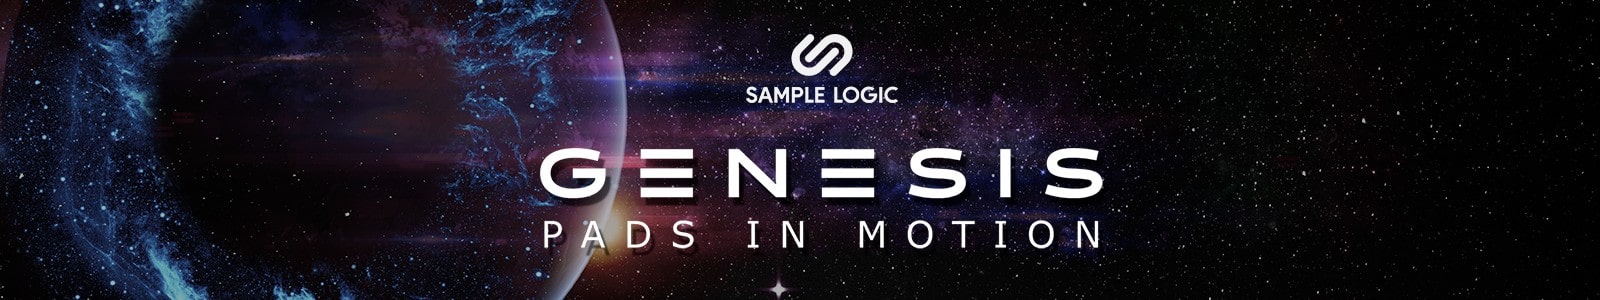 genesis pads in motion